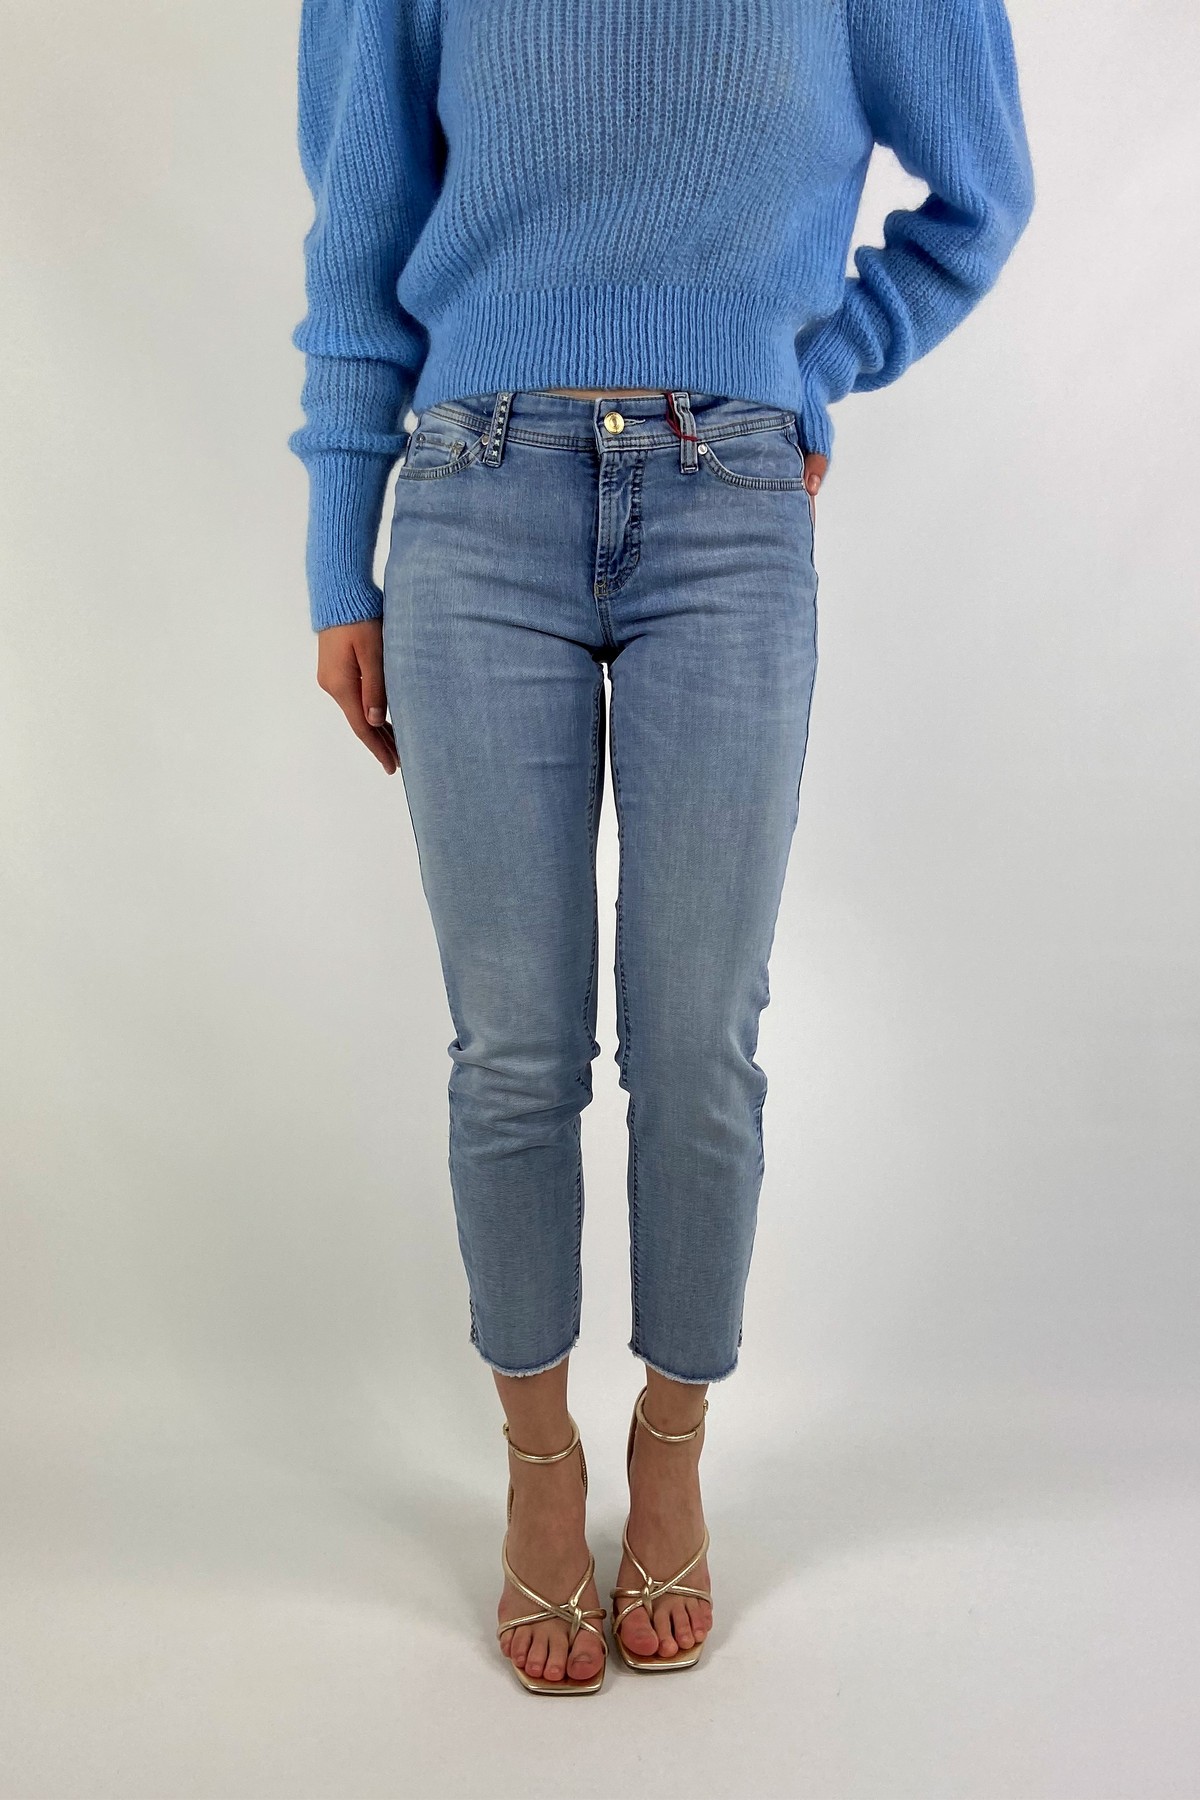 Broek jeans 5 pocket ethno in de kleur medblue washed van het merk Cambio